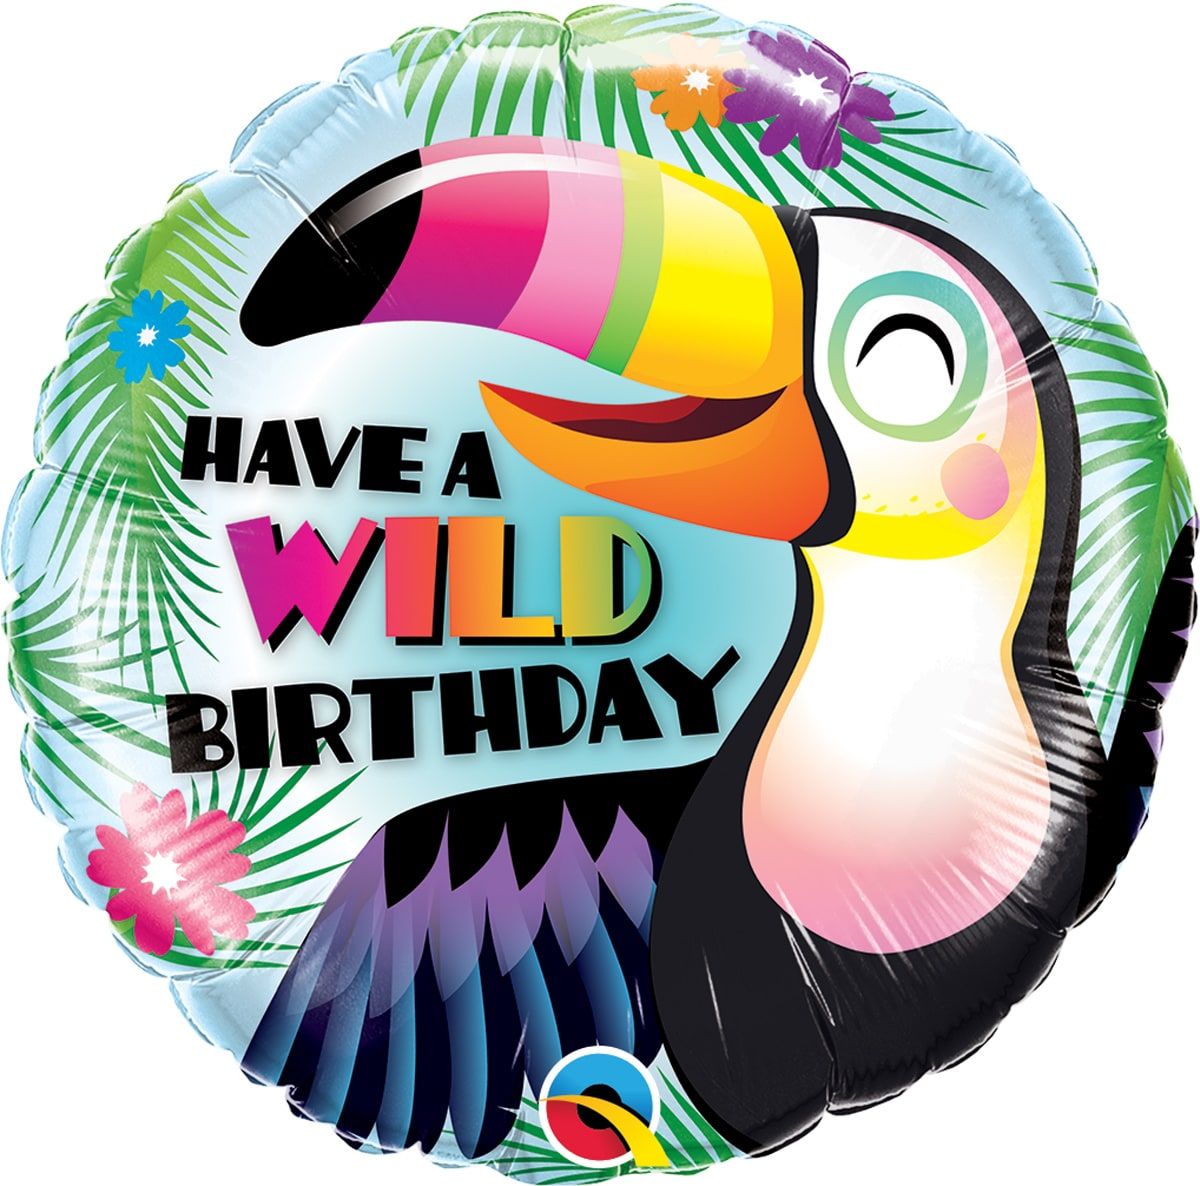 Folieballon tropische toekan verjaardag